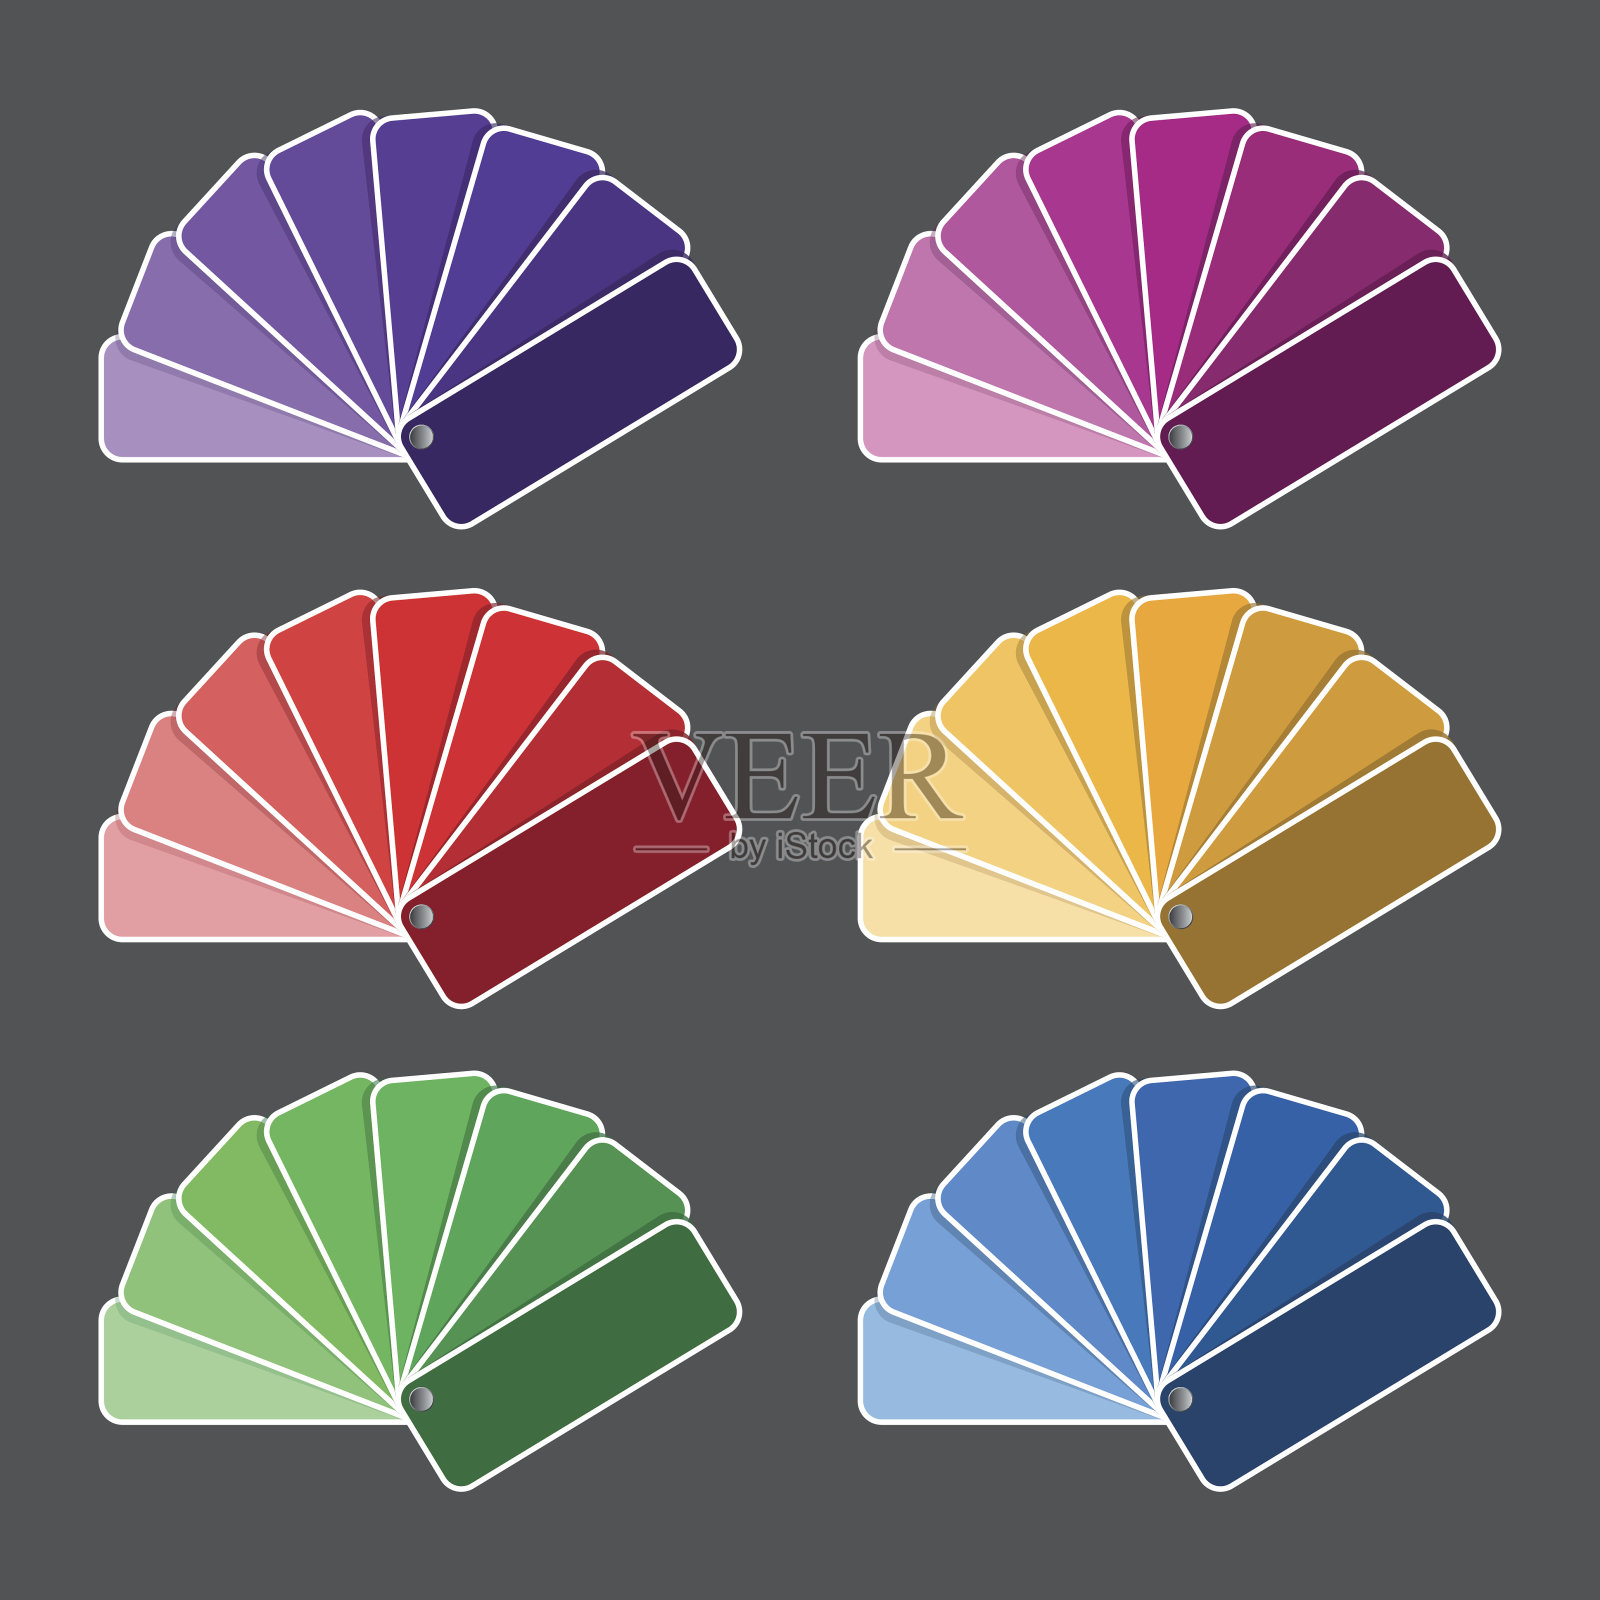 一套六色调色板-紫色，粉红色，红色，黄色，绿色和蓝色的味道插画图片素材